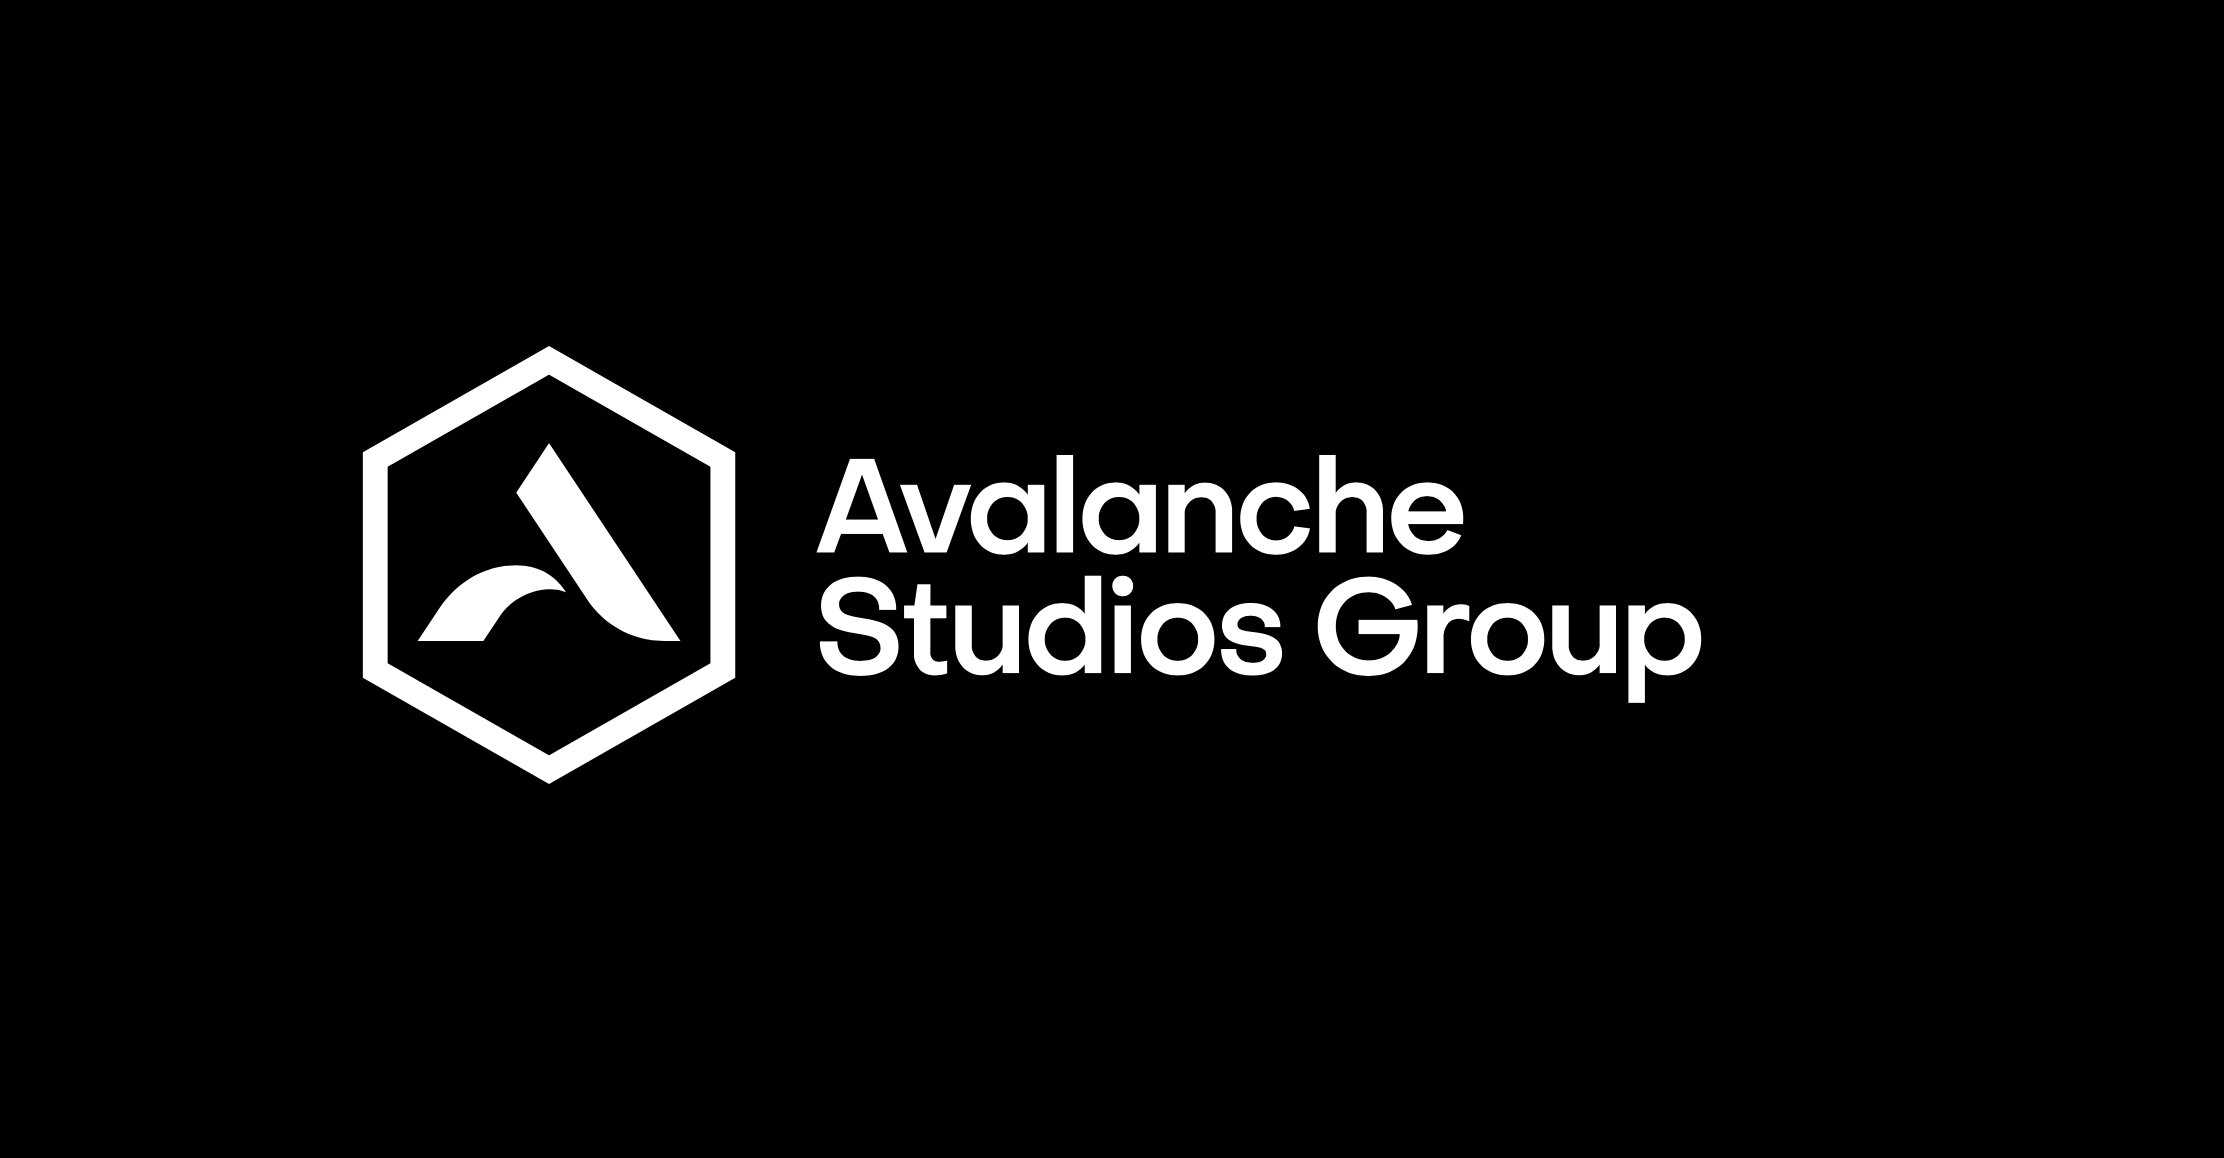 إستوديوهات Avalanche فتحوا فرع جديد في المملكة المتحدة